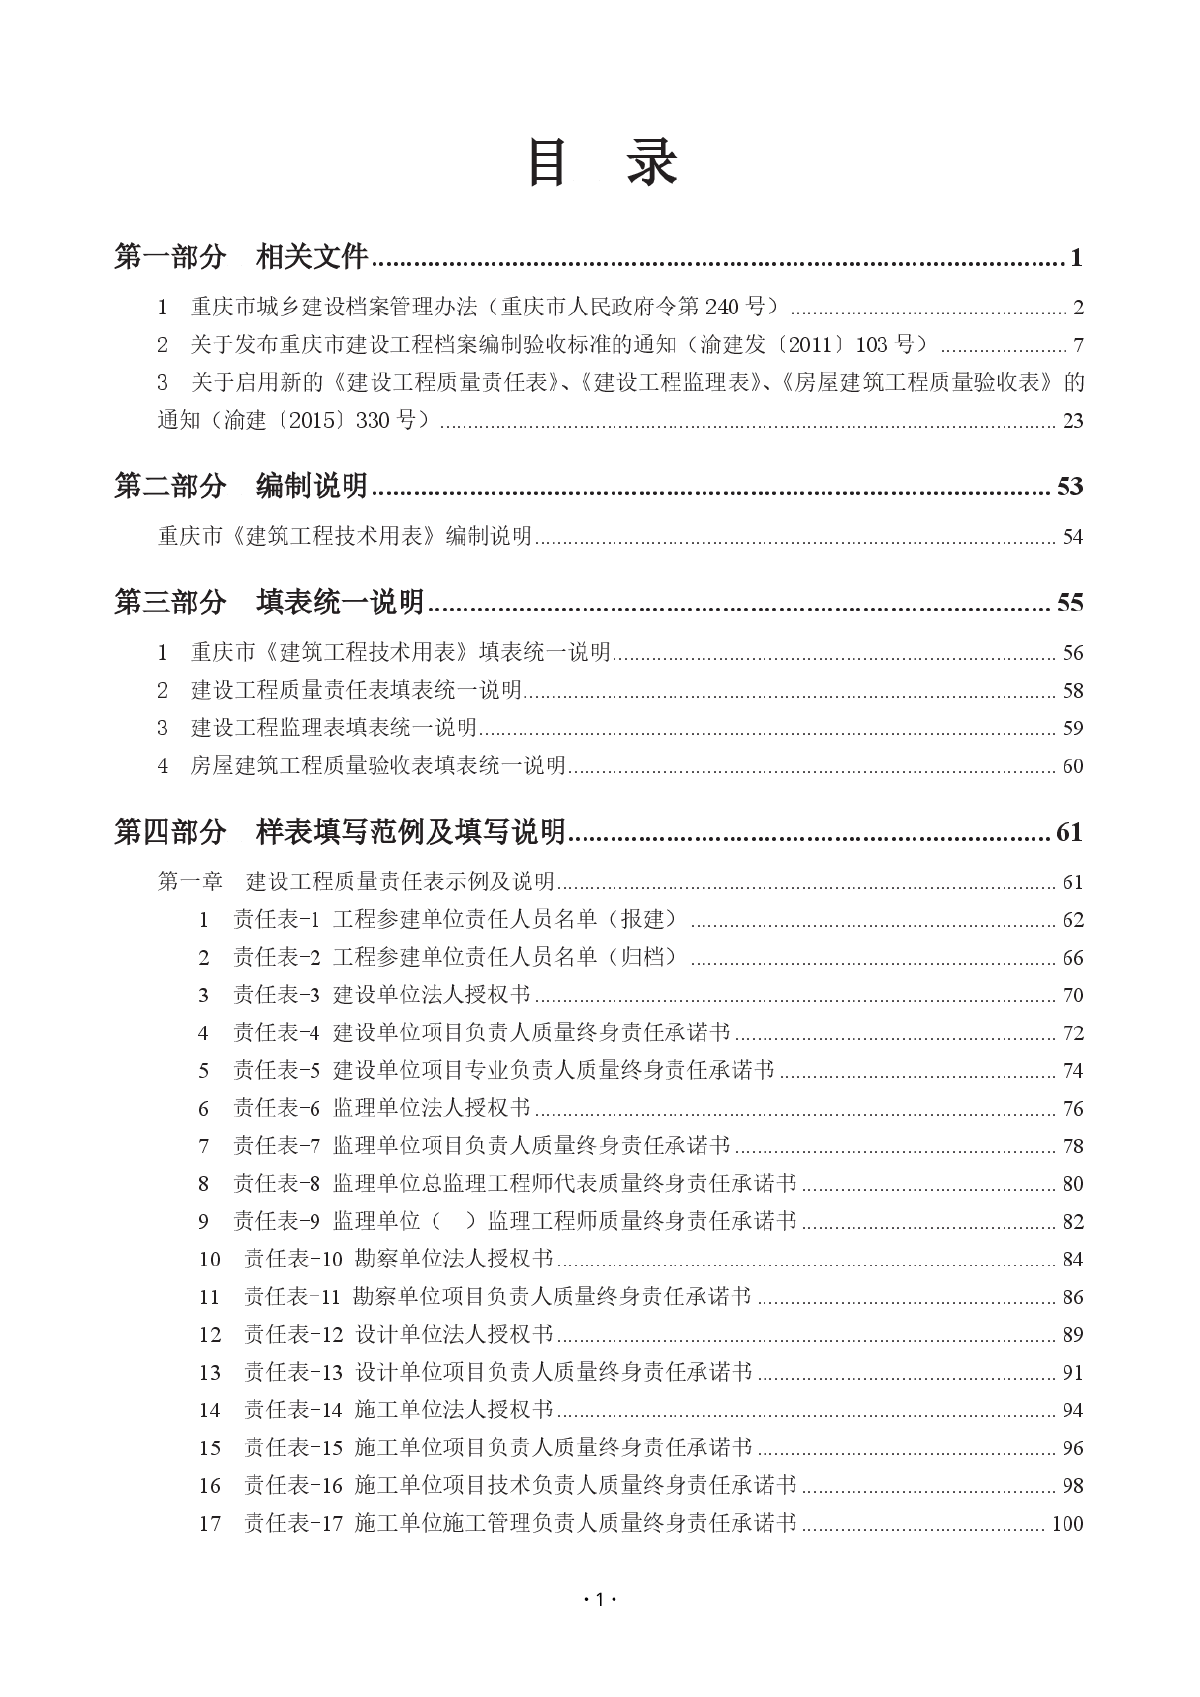 重庆市建筑工程技术用表样表填写范例与填写说明-目录-图一